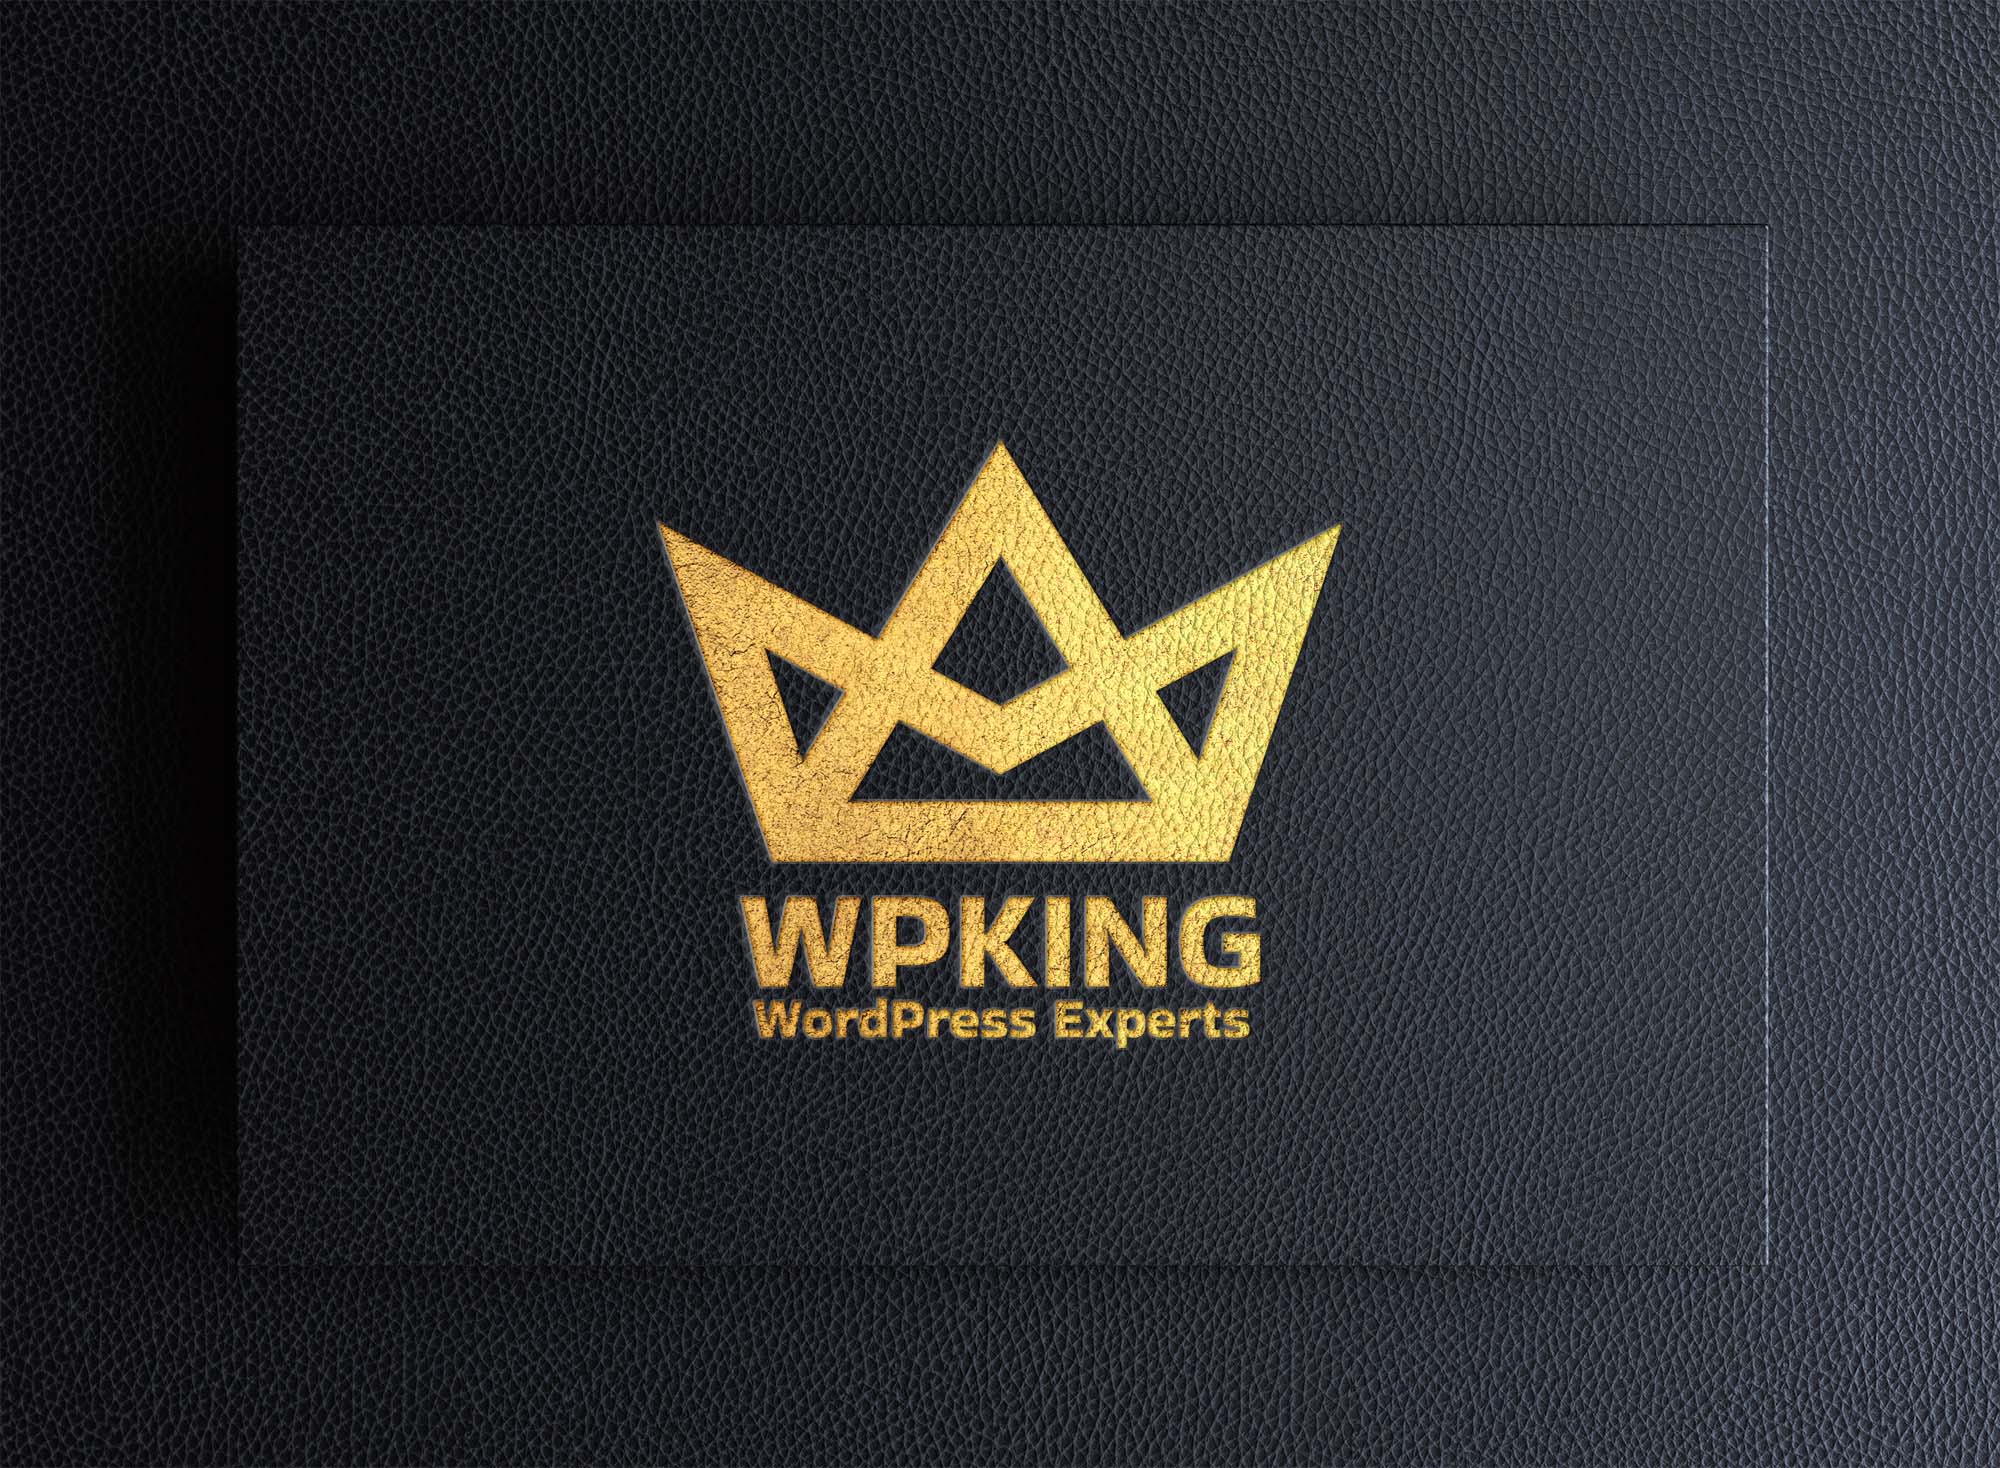 WP King